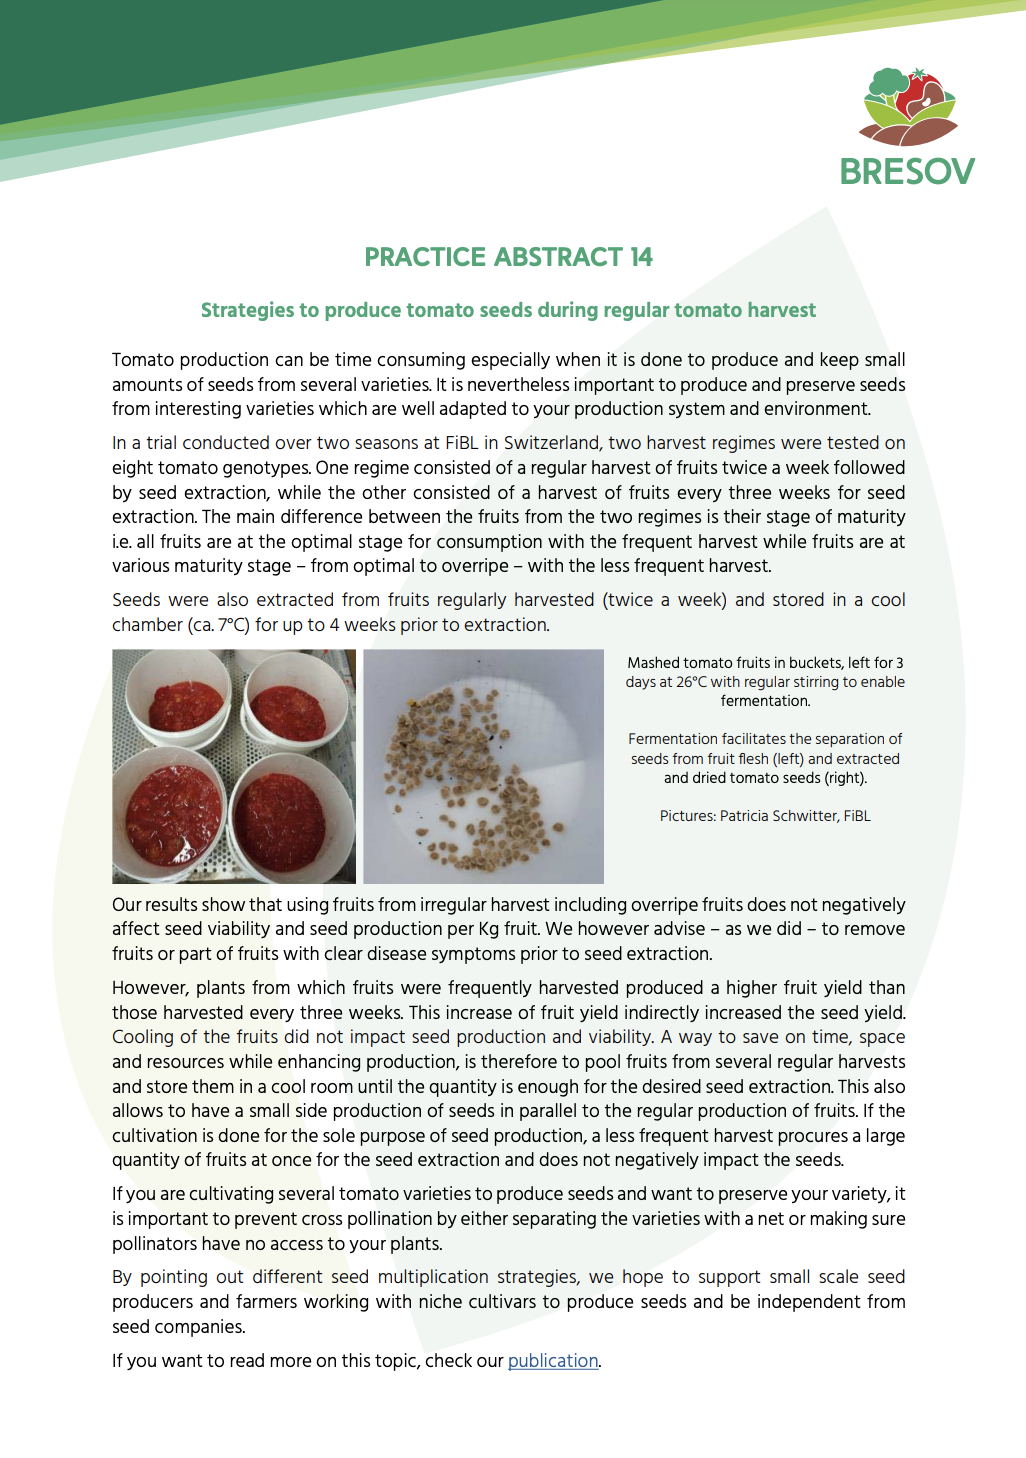 Stratégies pour produire des graines de tomates lors de la récolte régulière de tomates (BRESOV Practice Abstract)